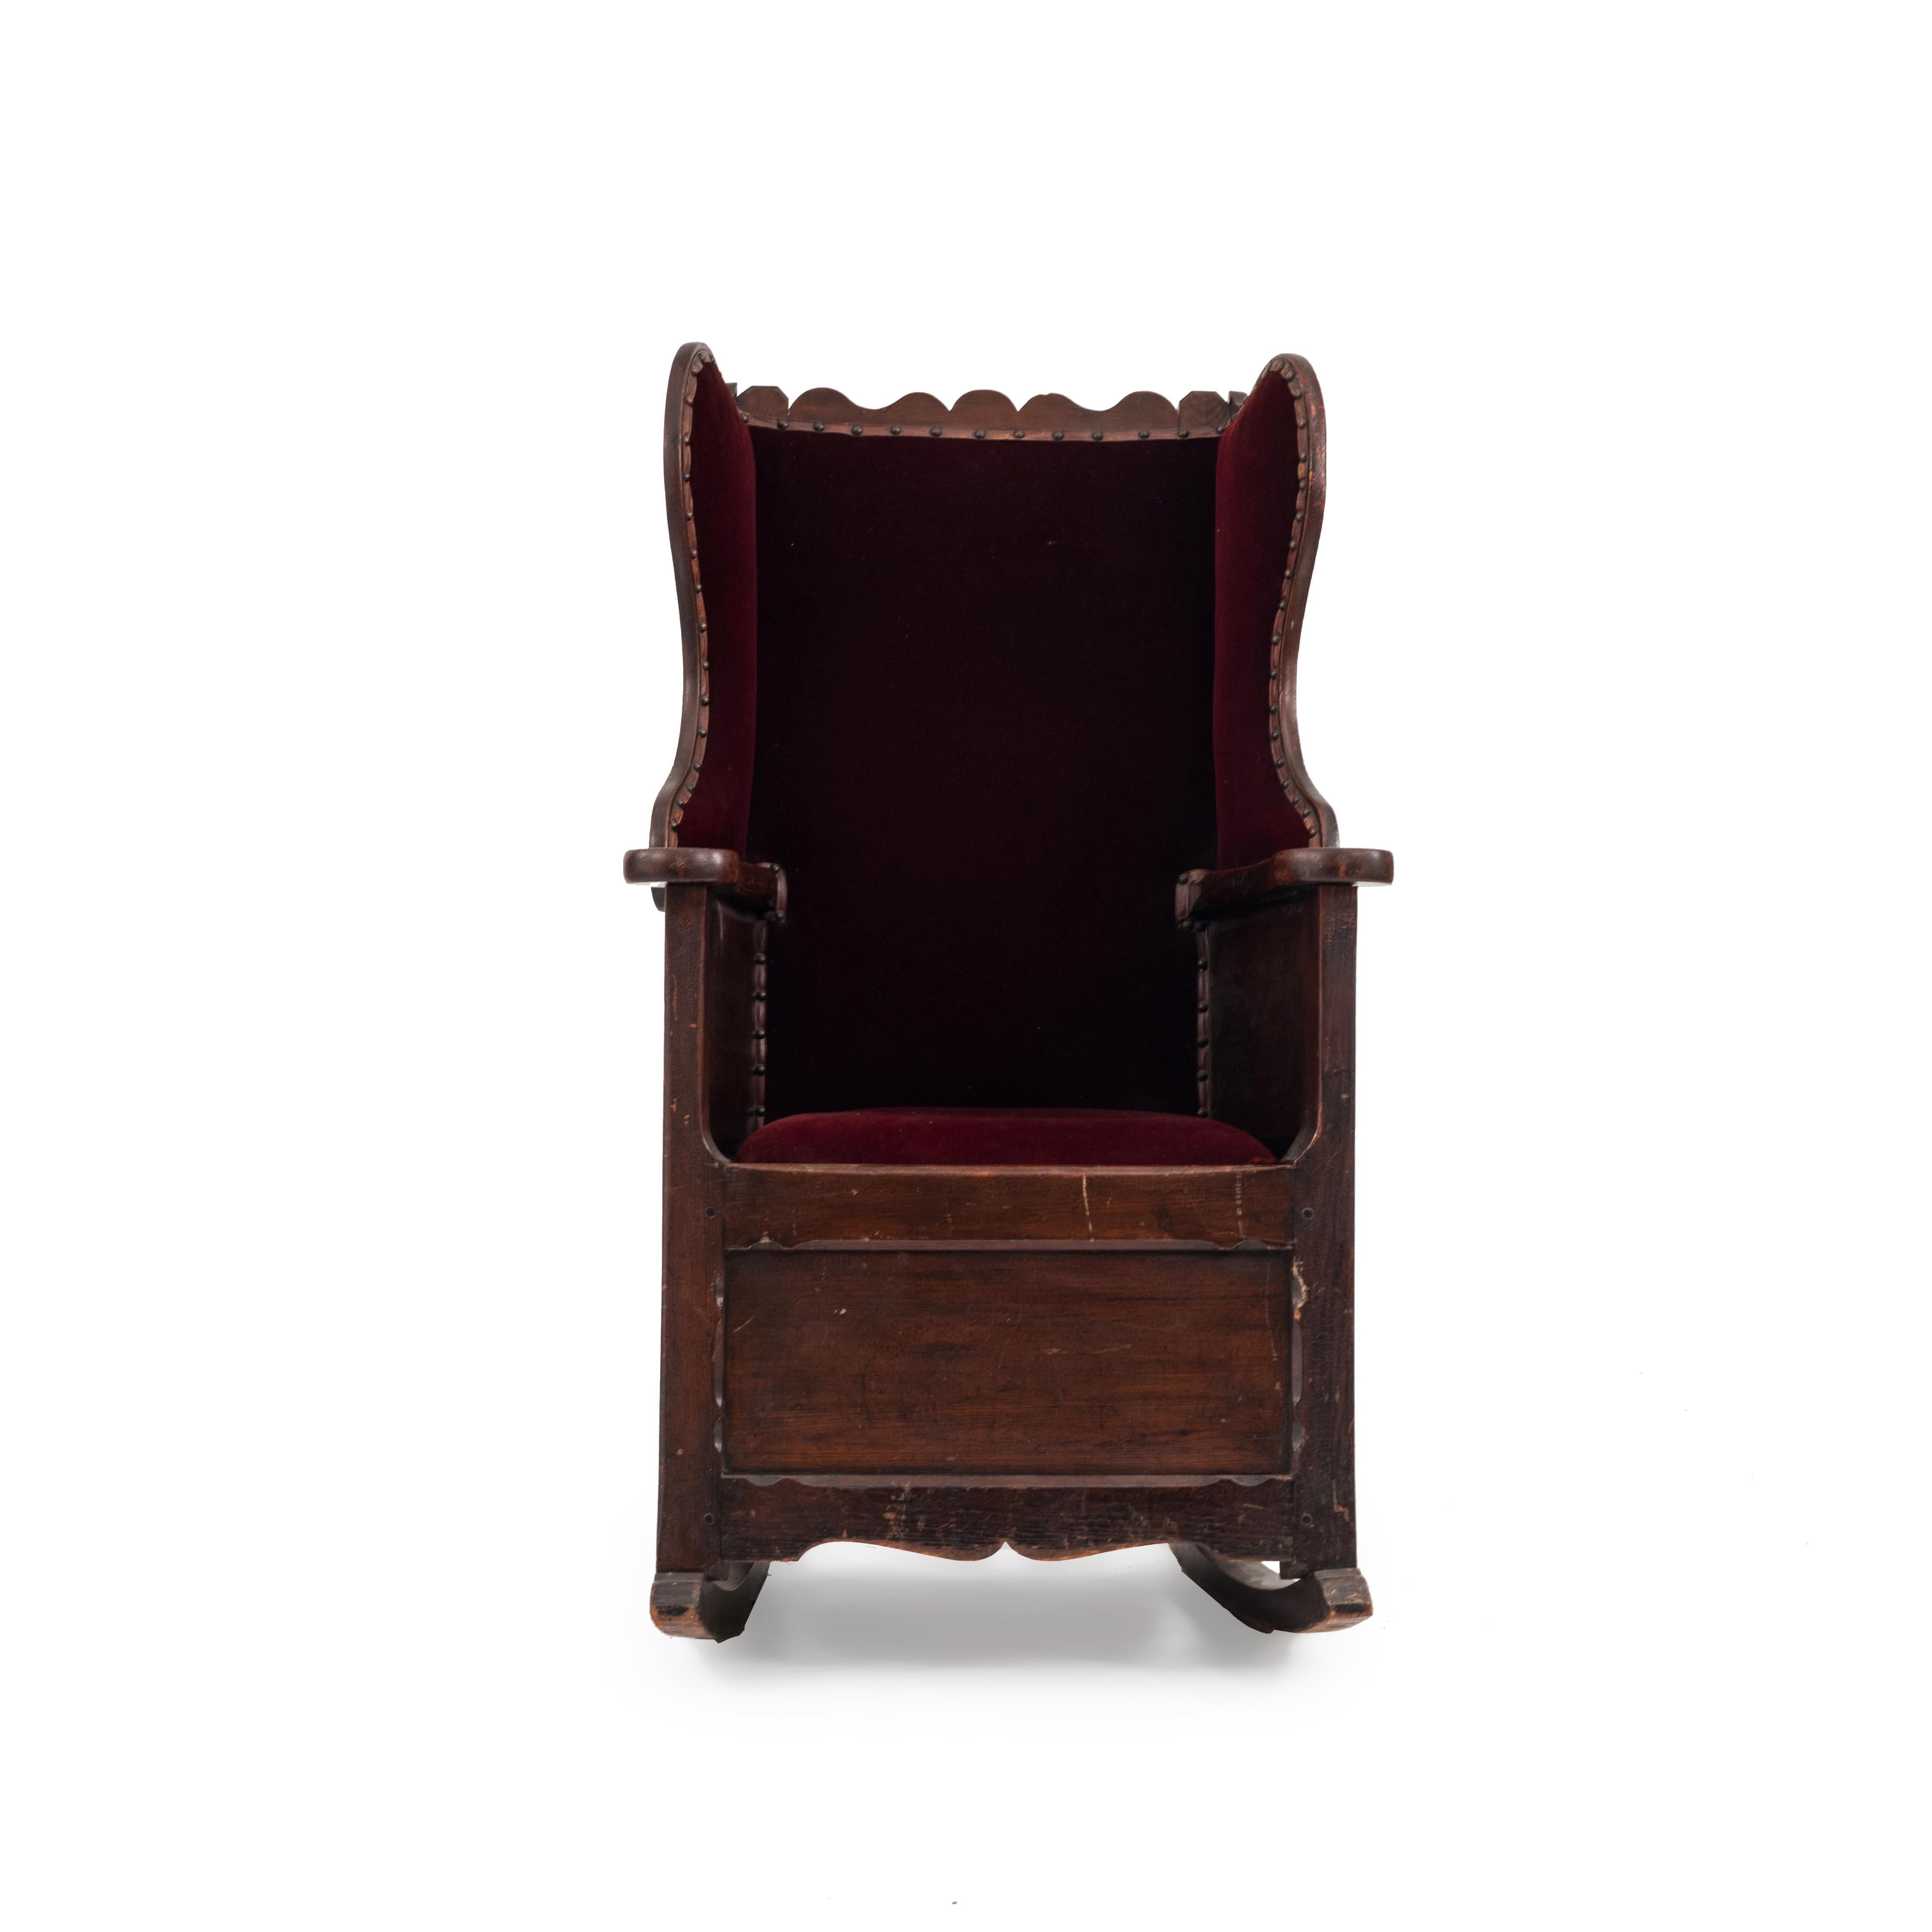 Englischer Landhausstil (18.-19. Jahrhundert), antiker Schaukelstuhl aus Kiefernholz mit geschwungener Rückenlehne und mit rotem Samt gepolstertem Sitz und Rücken.